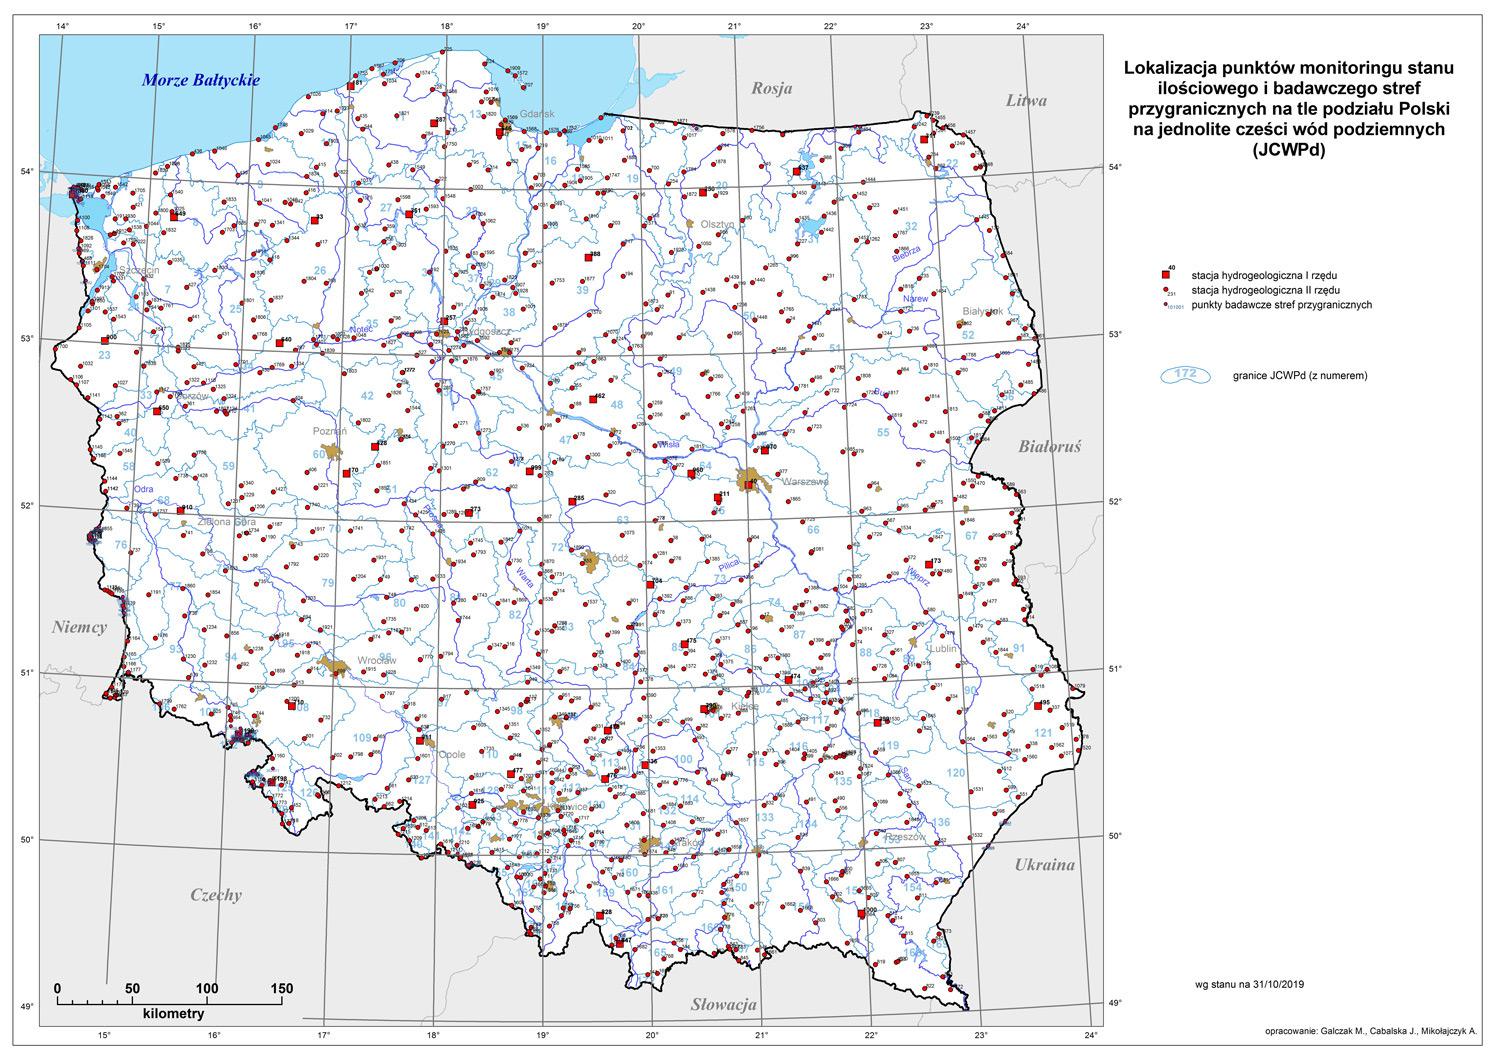 Lokalizacja punktów monitoringu stanu ilościowego – stacji hydrogeologicznych sieci obserwacyjno-badawczej wód podziemnych PIG-PIB na tle podziału Polski na jednolite części wód podziemnych (JCWPd) – podział na 172 jednolitych części.